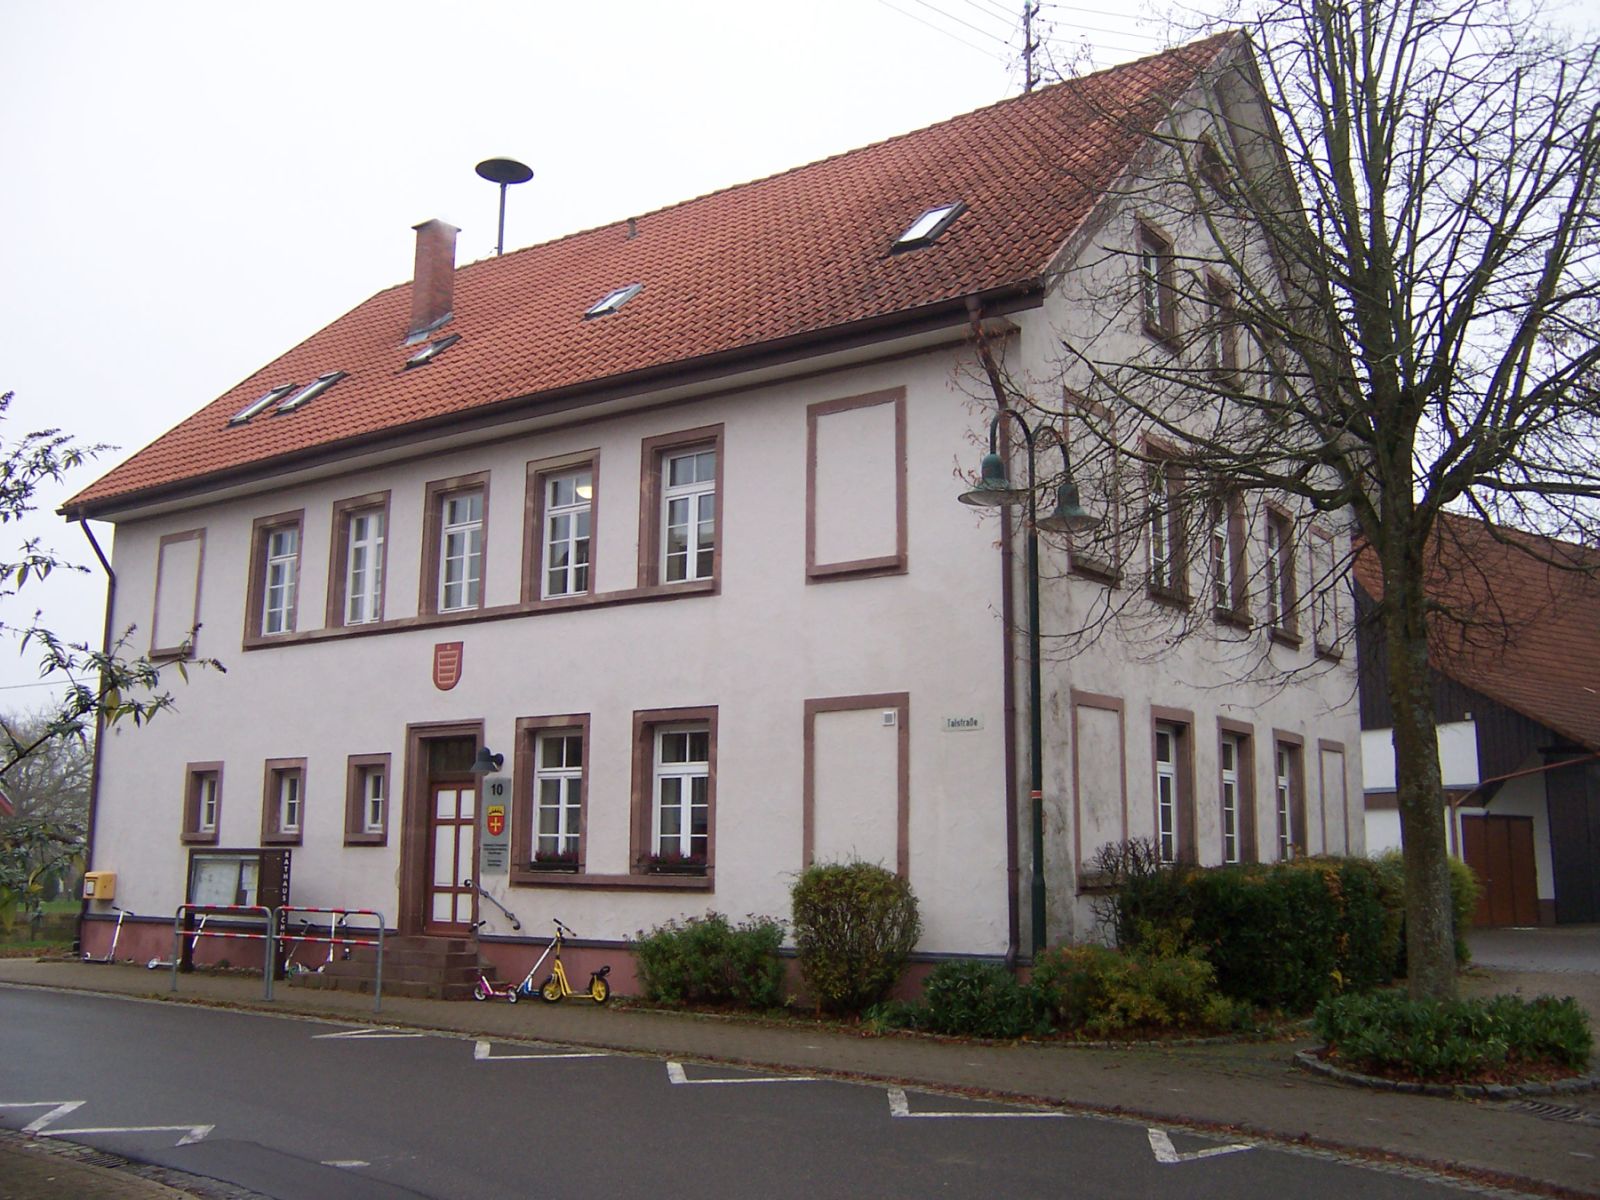  Ortschaftsverwaltung Oberiflingen - das Bild wird mit einem Klick vergrößert 